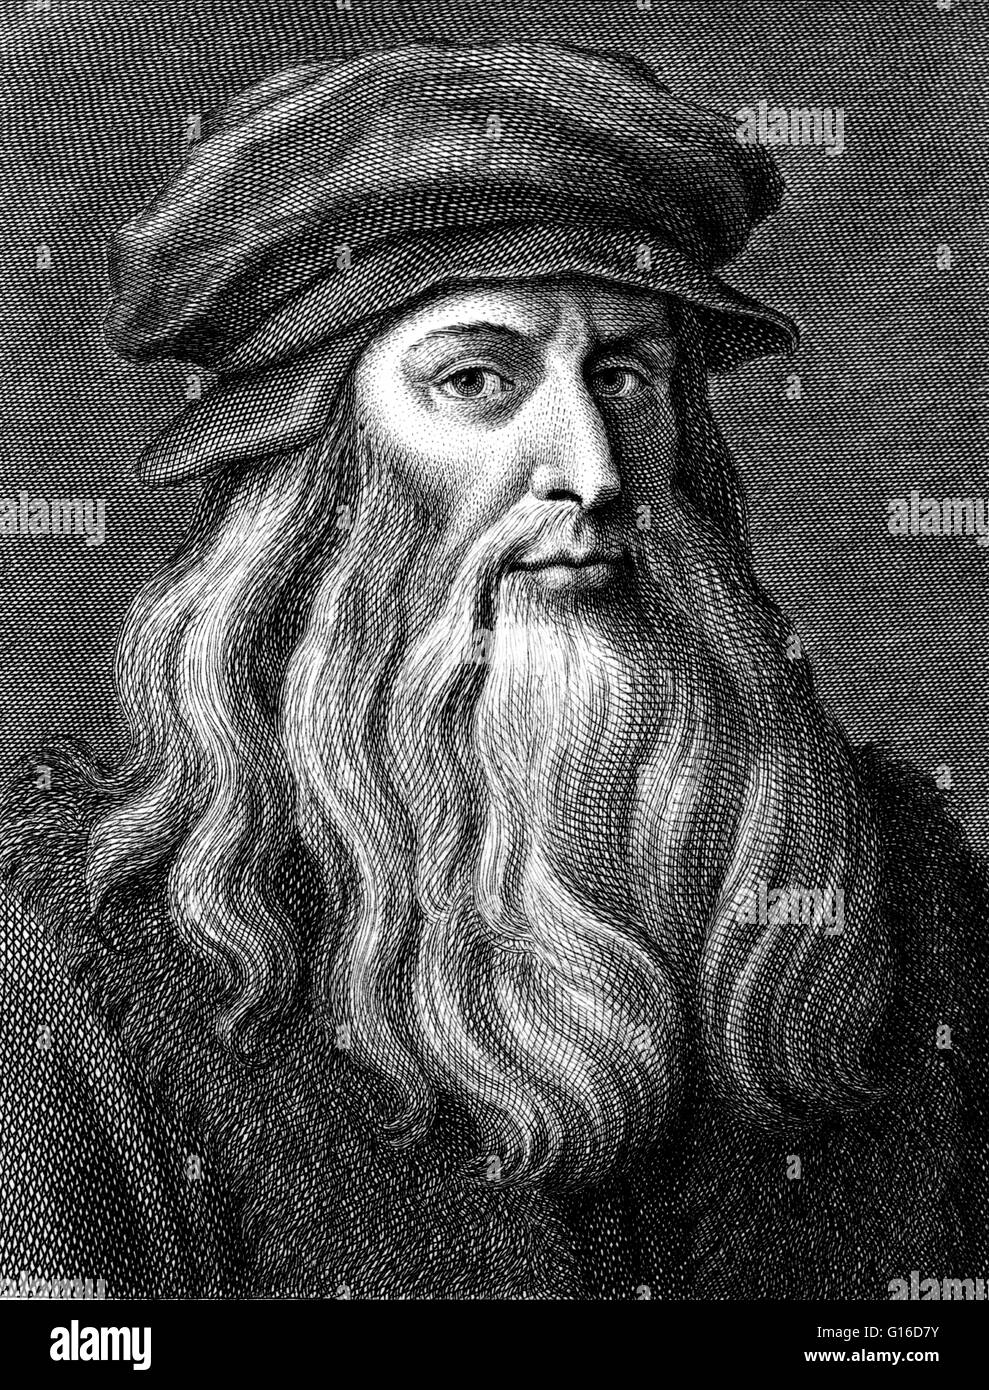 Leonardo di Ser Piero da Vinci (15. April 1452-2. Mai 1519) war eine italienische Renaissance Universalgelehrter: Maler, Bildhauer, Architekt, Musiker, Mathematiker, Ingenieur, Erfinder, Anatom, Geologe, Kartograph, Botaniker und Schriftsteller. Sein Genie, vielleicht mor Stockfoto